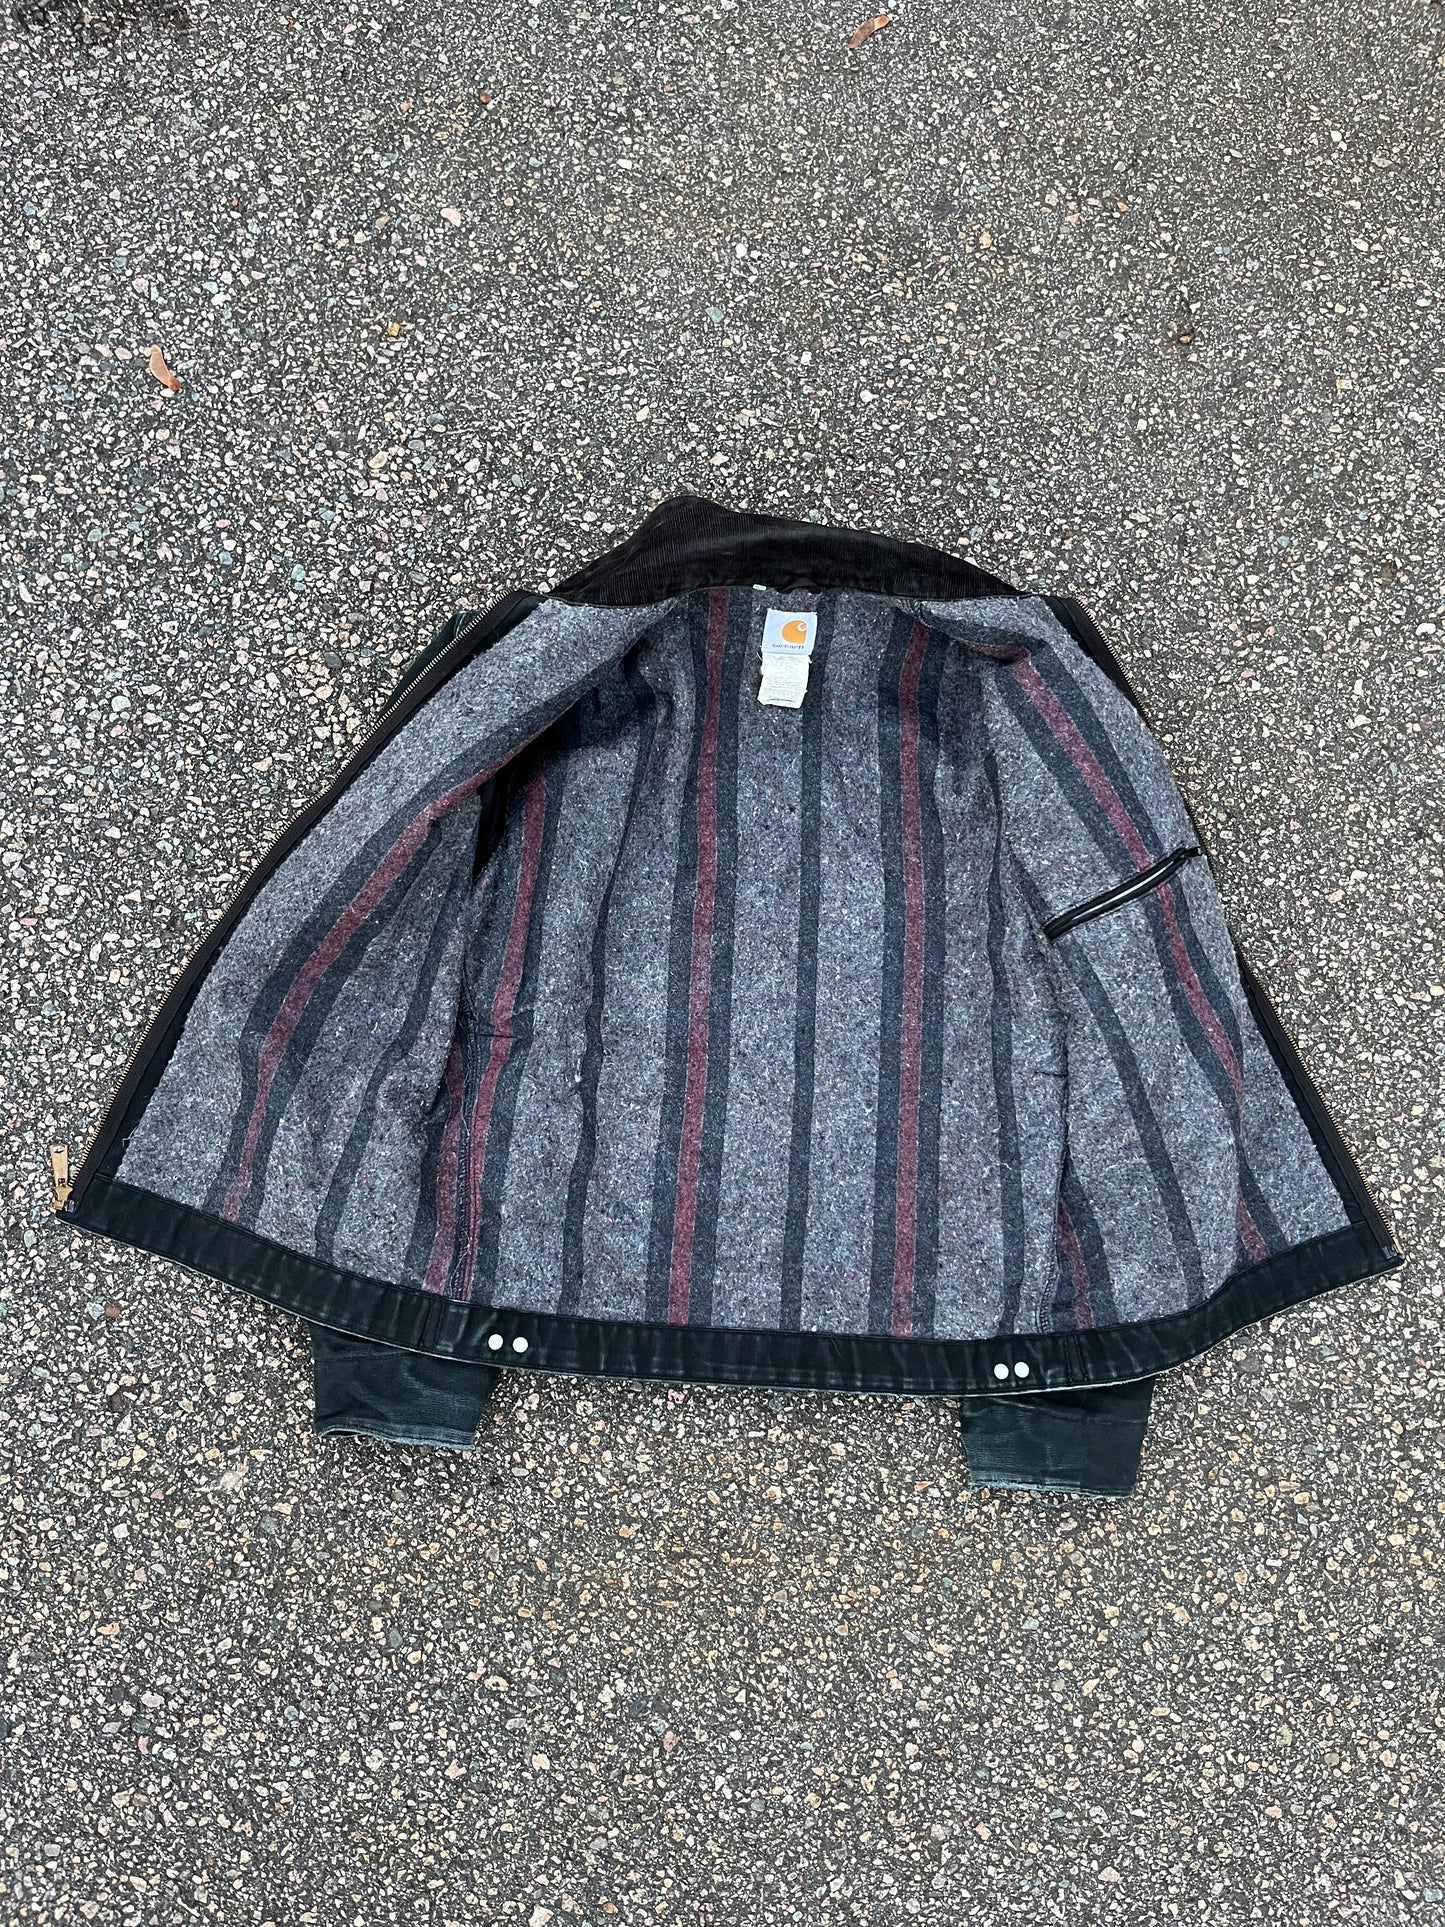 Faded Black Carhartt Detroit Jacket - Medium Tall